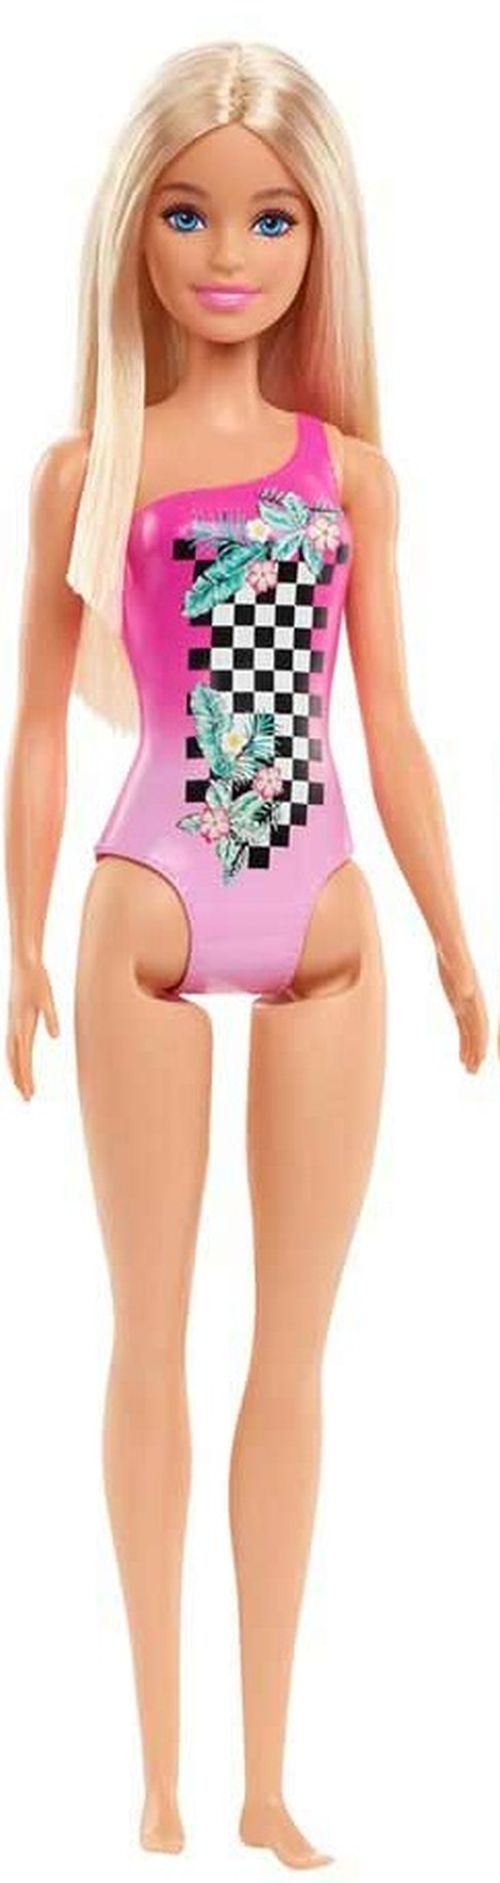 MATTEL Barbie Beach Doll In Pink Swimsuit - BARBIE DOLLS